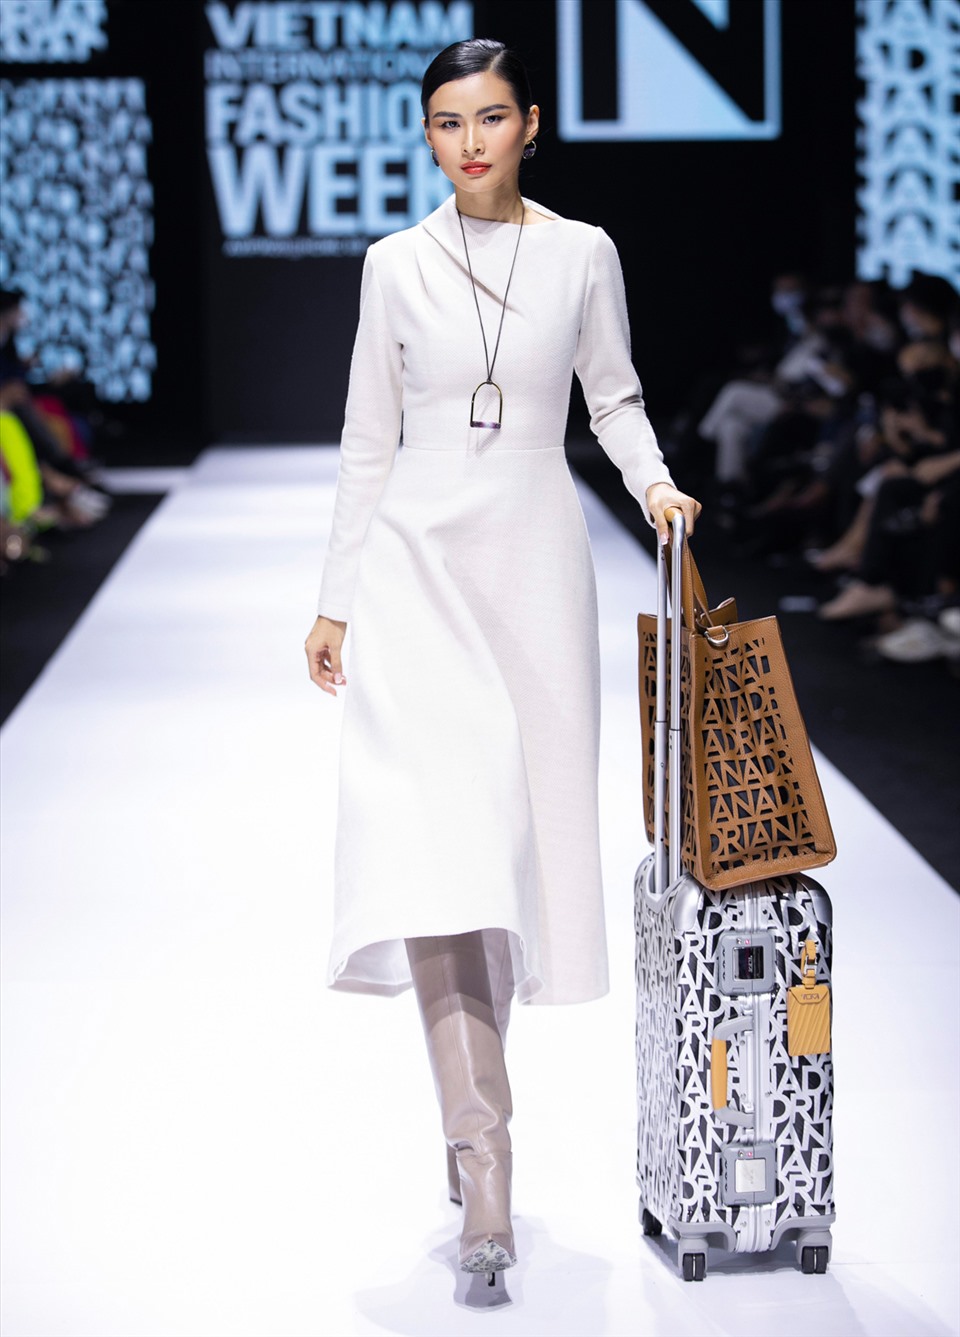 Tên của nhà thiết kế xuất hiện trên trang phục lẫn phụ kiện như túi xách, vali theo xu hướng phô bày tên thương hiệu trên sản phẩm được làng mốt thế giới lăng xê.